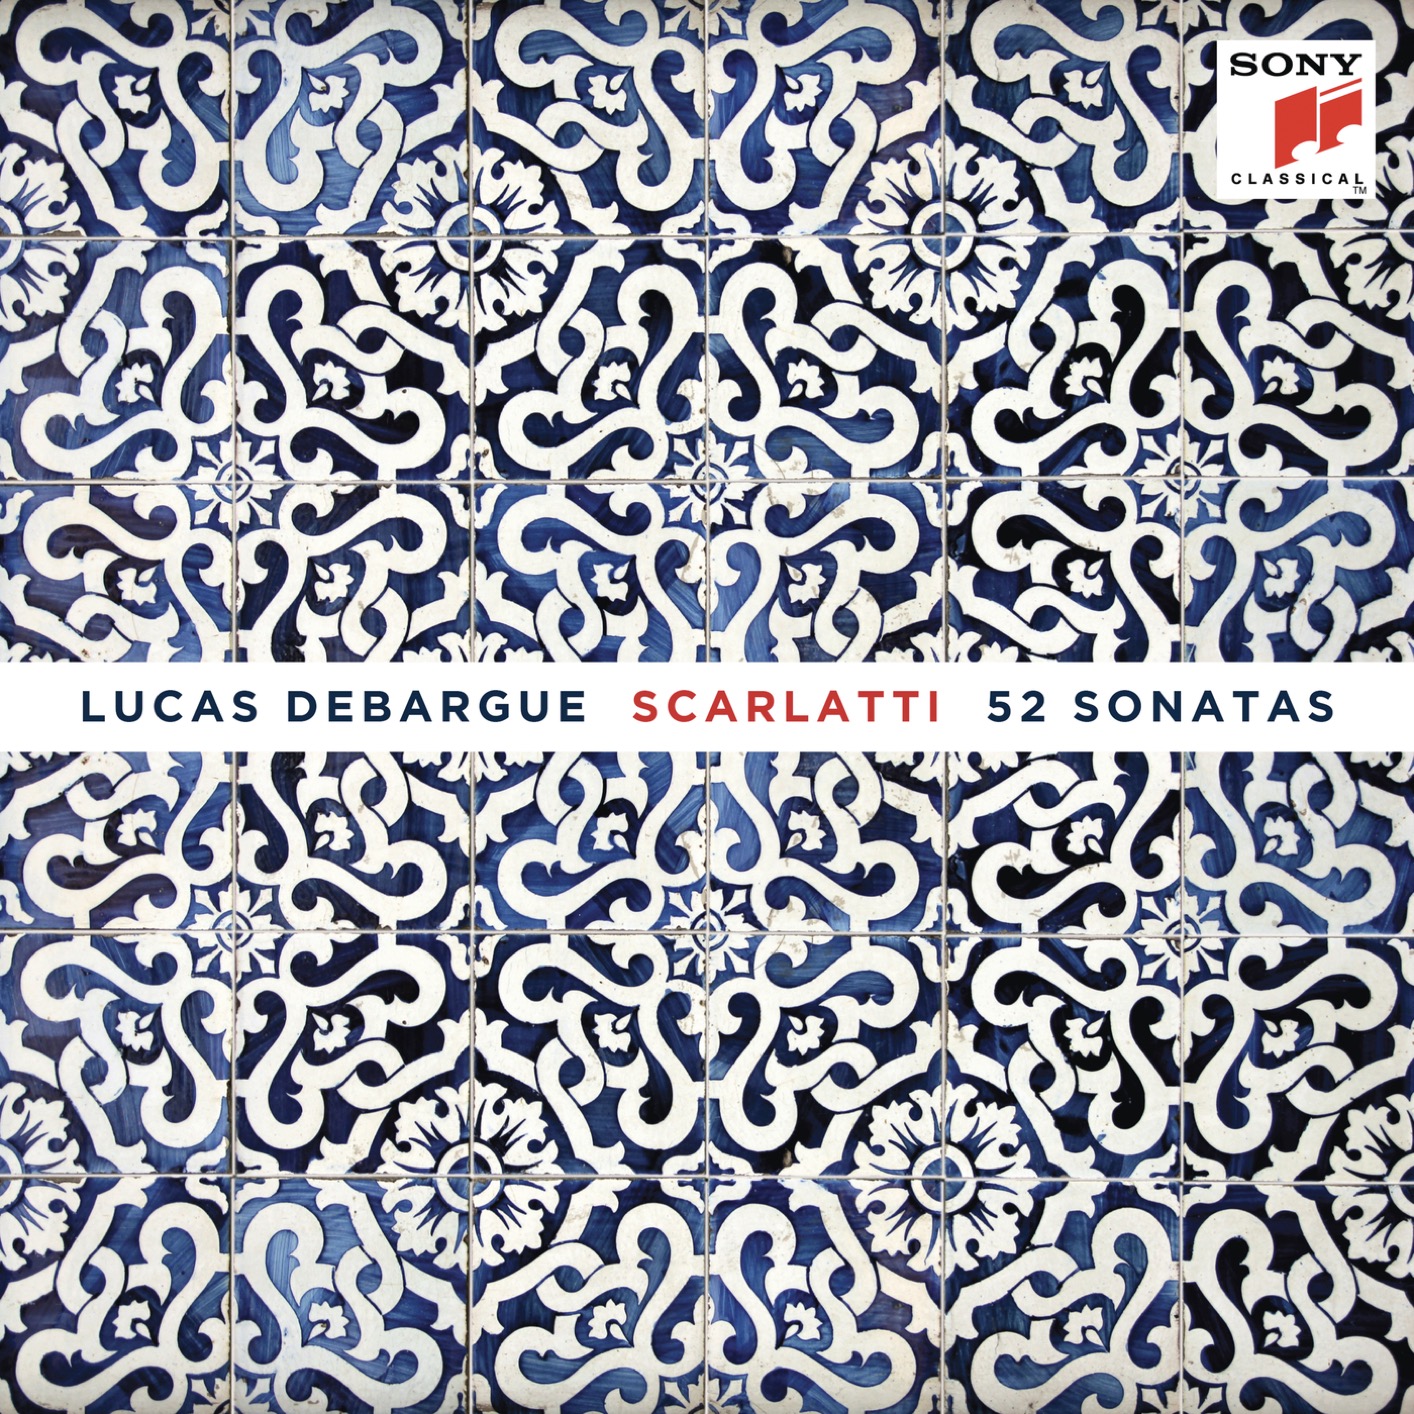 Lucas Debargue – Scarlatti: 52 Sonatas (2019) [FLAC 24bit/192kHz]